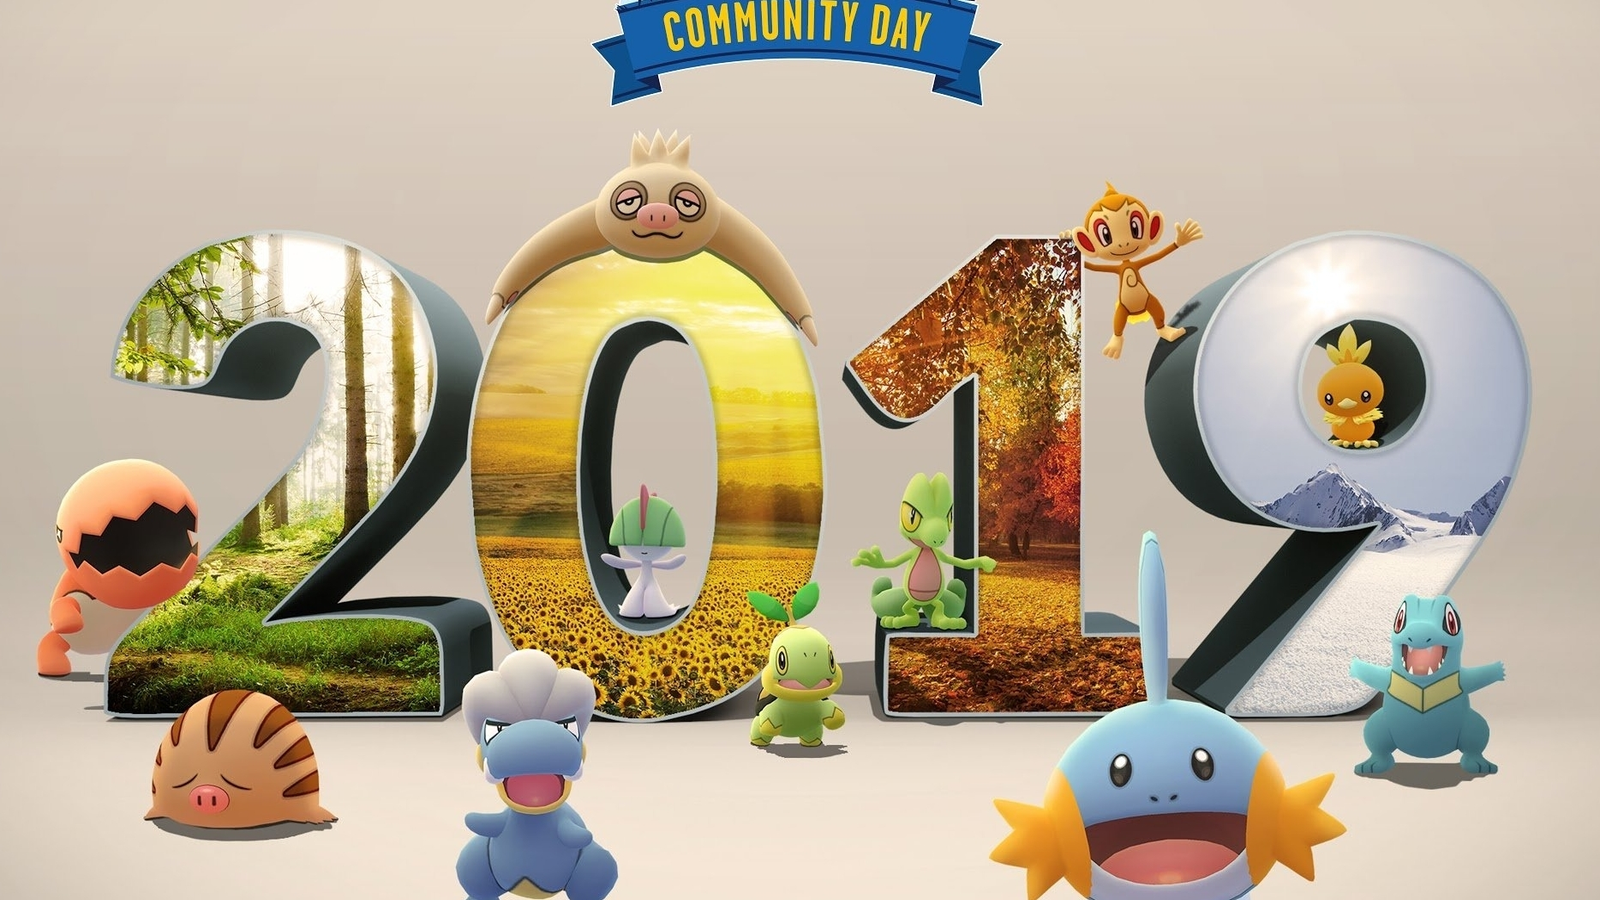 Dia Comunitário Clássico com Mareep no Pokémon GO em novembro de 2023